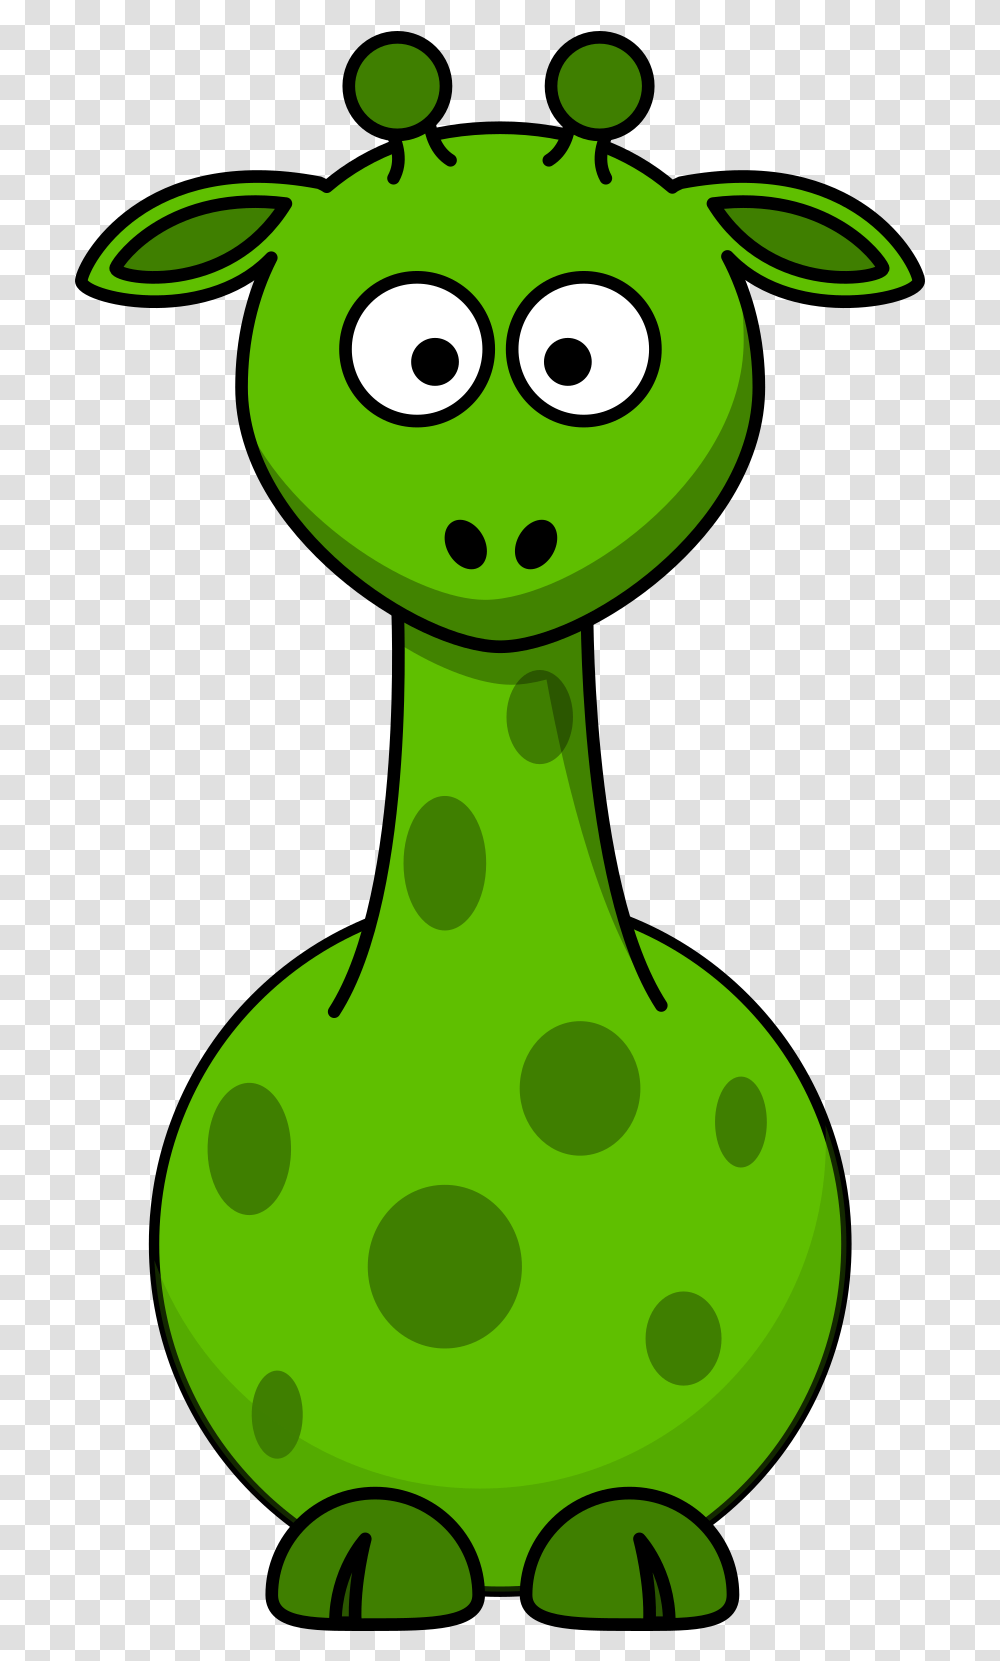 Cartoon Giraffe Sailor, Green, Plant, Food, Animal Transparent Png